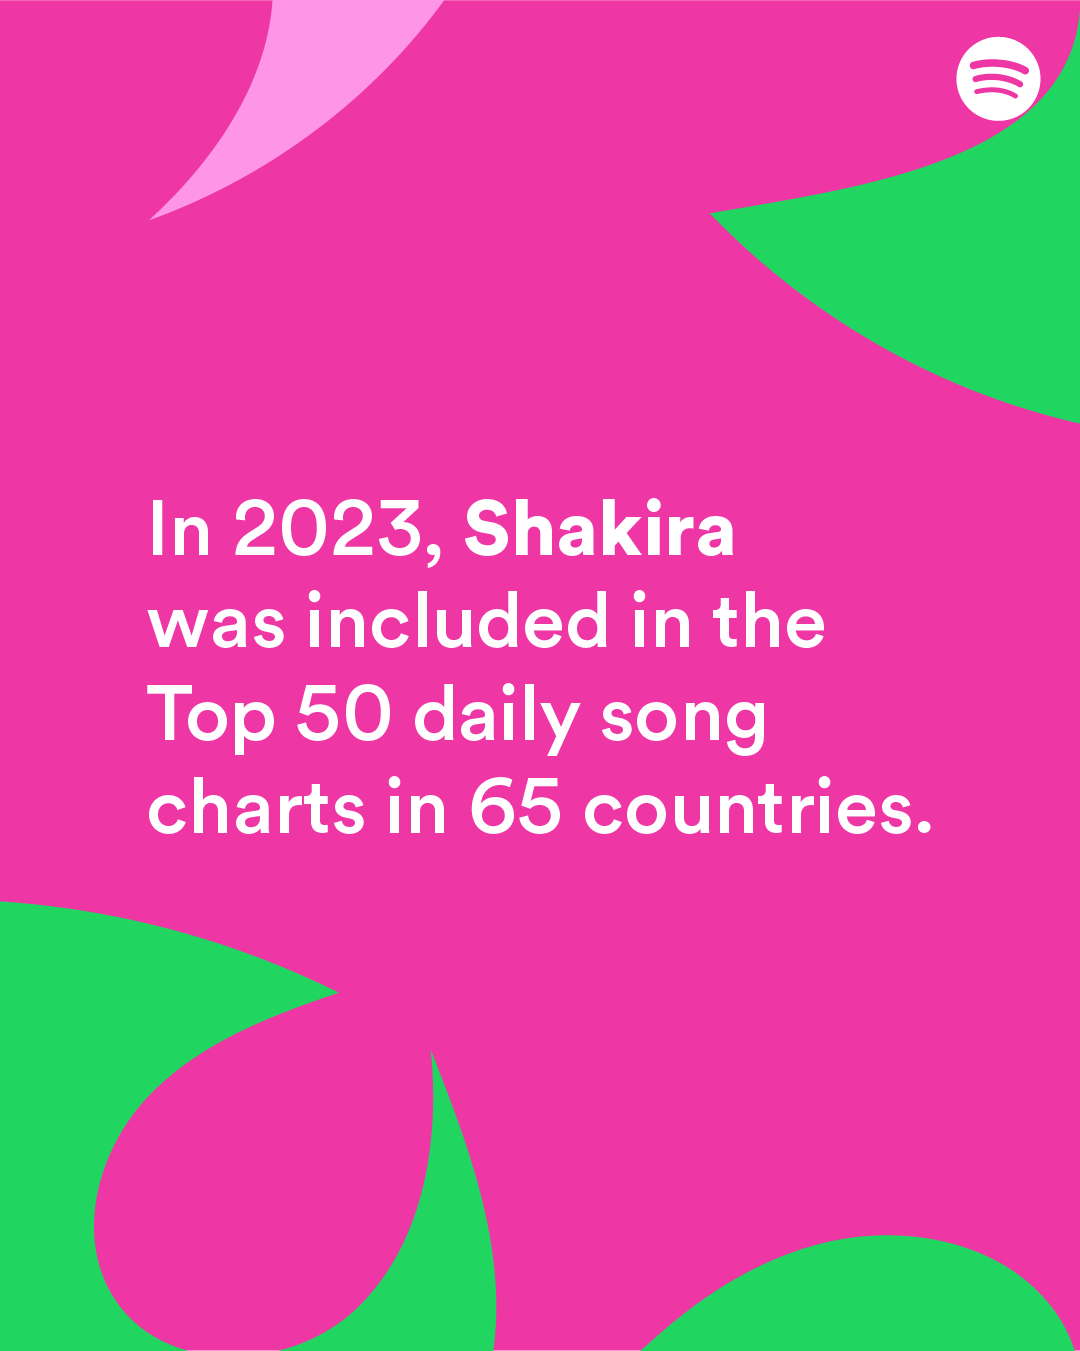 Shakira completa 47 anos e Spotify revela marcas impressionantes da artista na plataforma